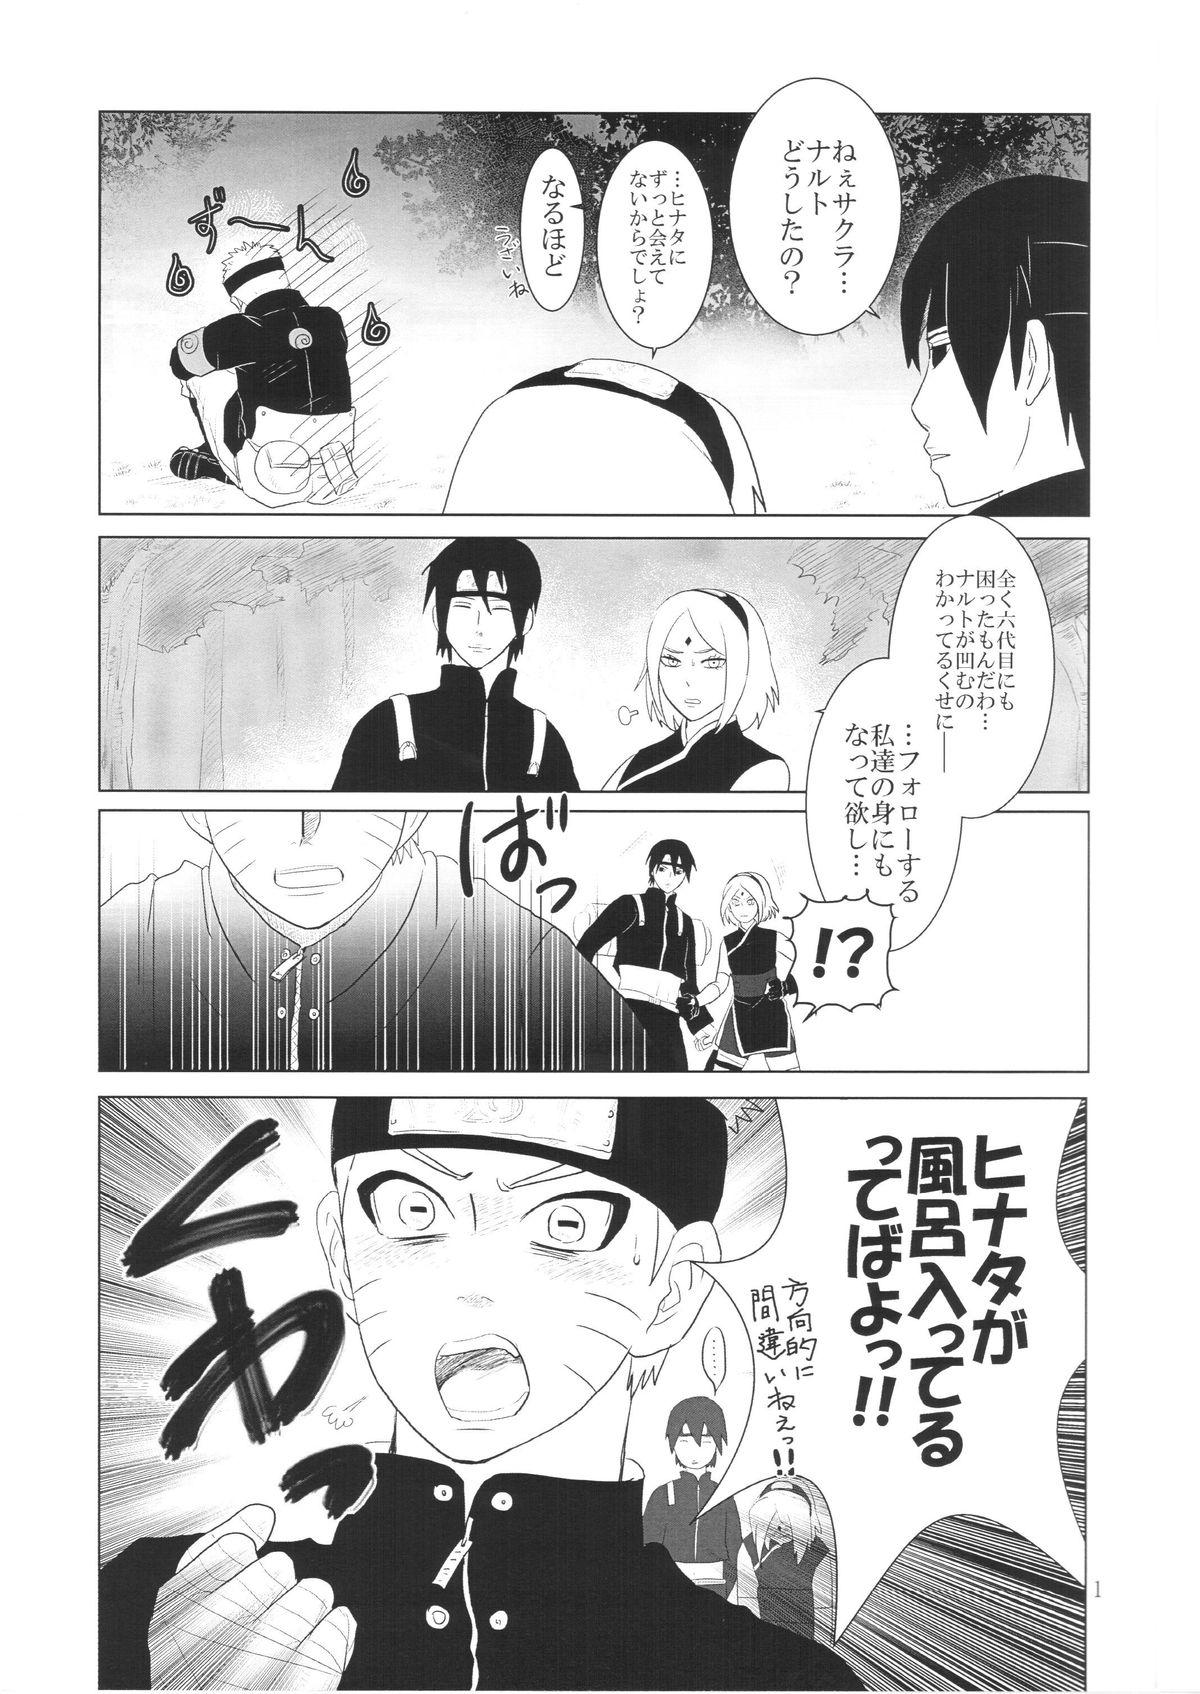 Gape Kanata no omoi wa ryoute ni tokeru - Naruto Gay Friend - Page 4